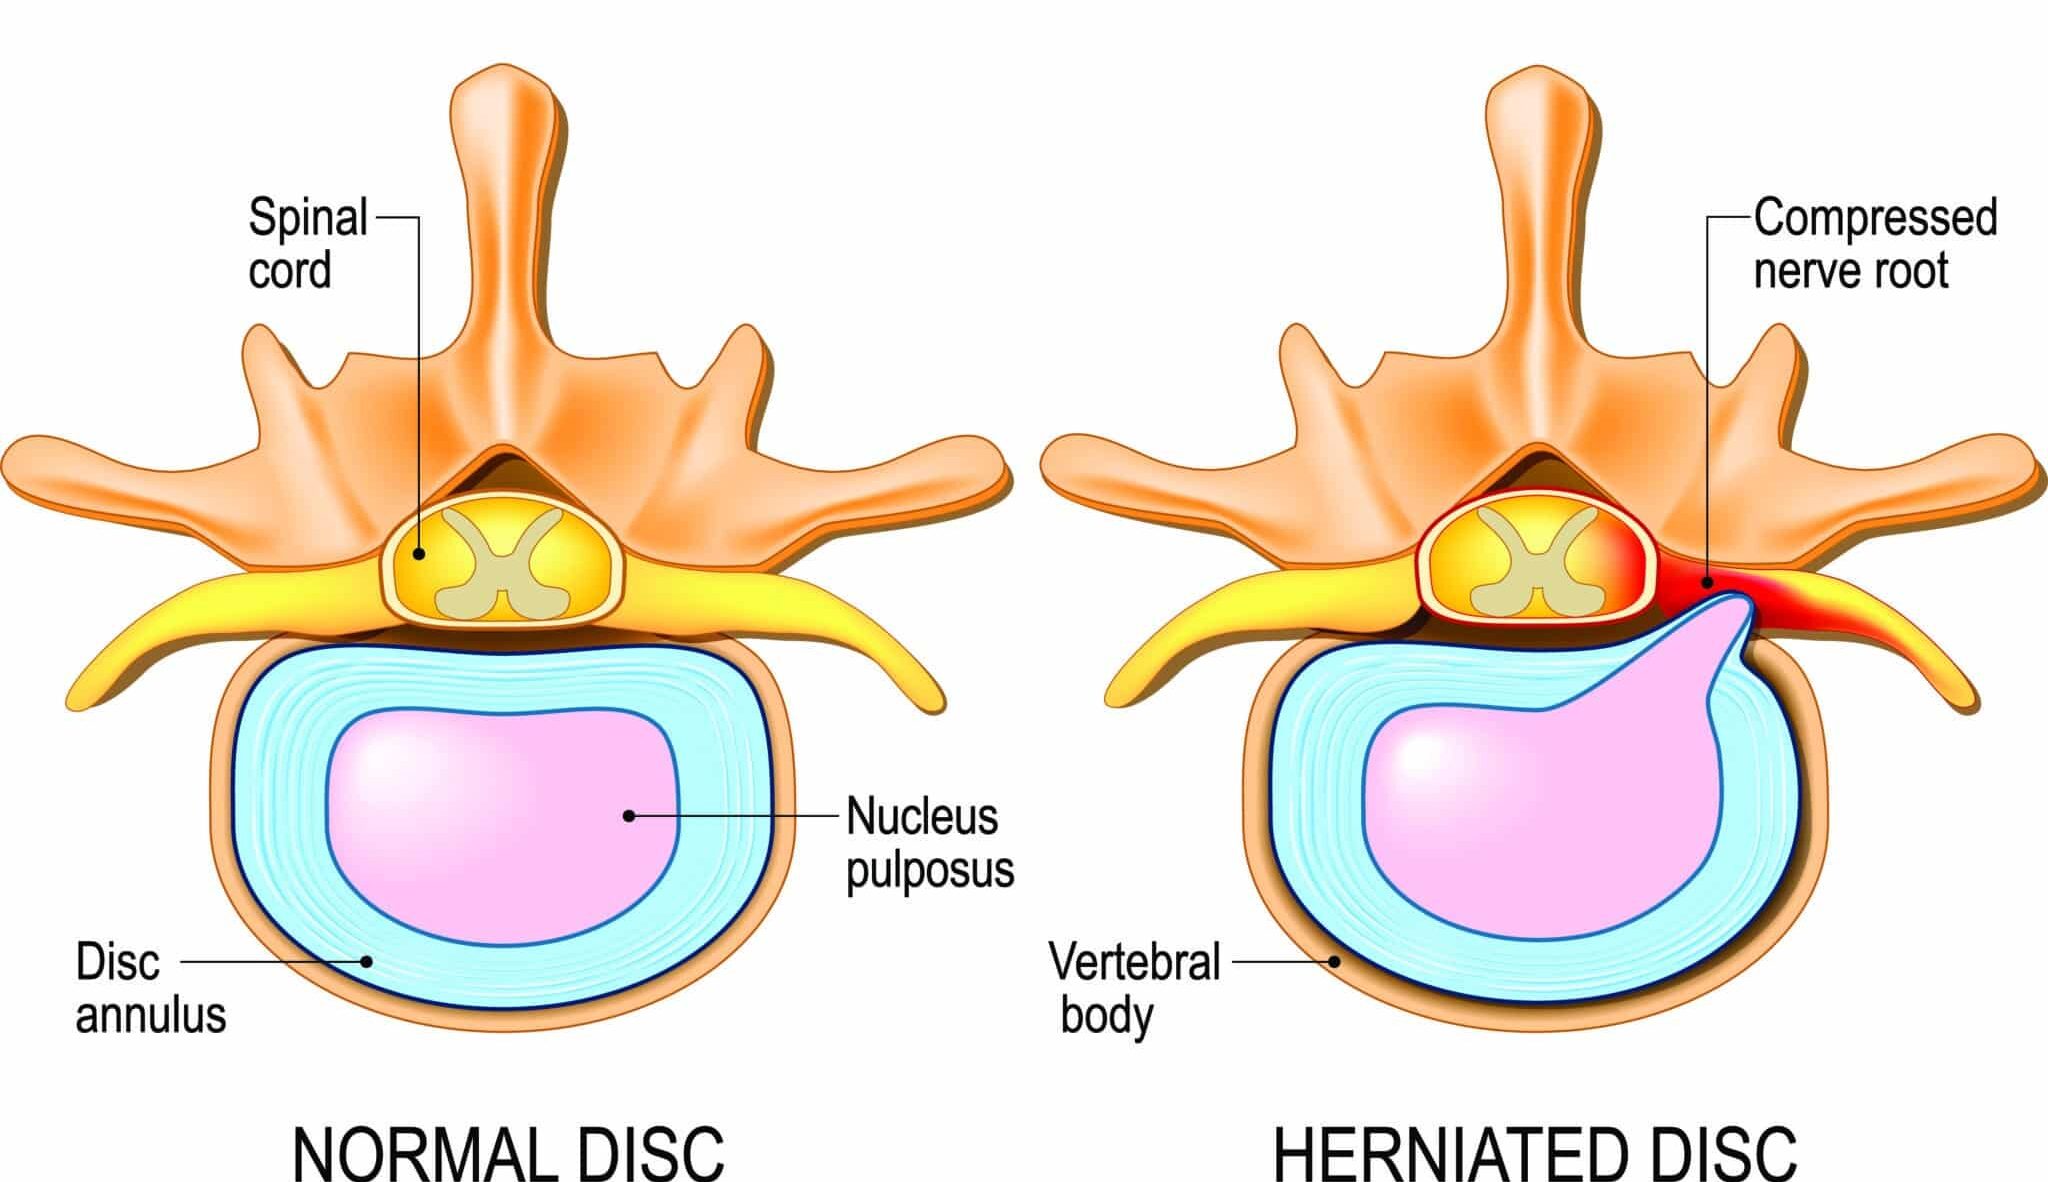 nucleus pulposus